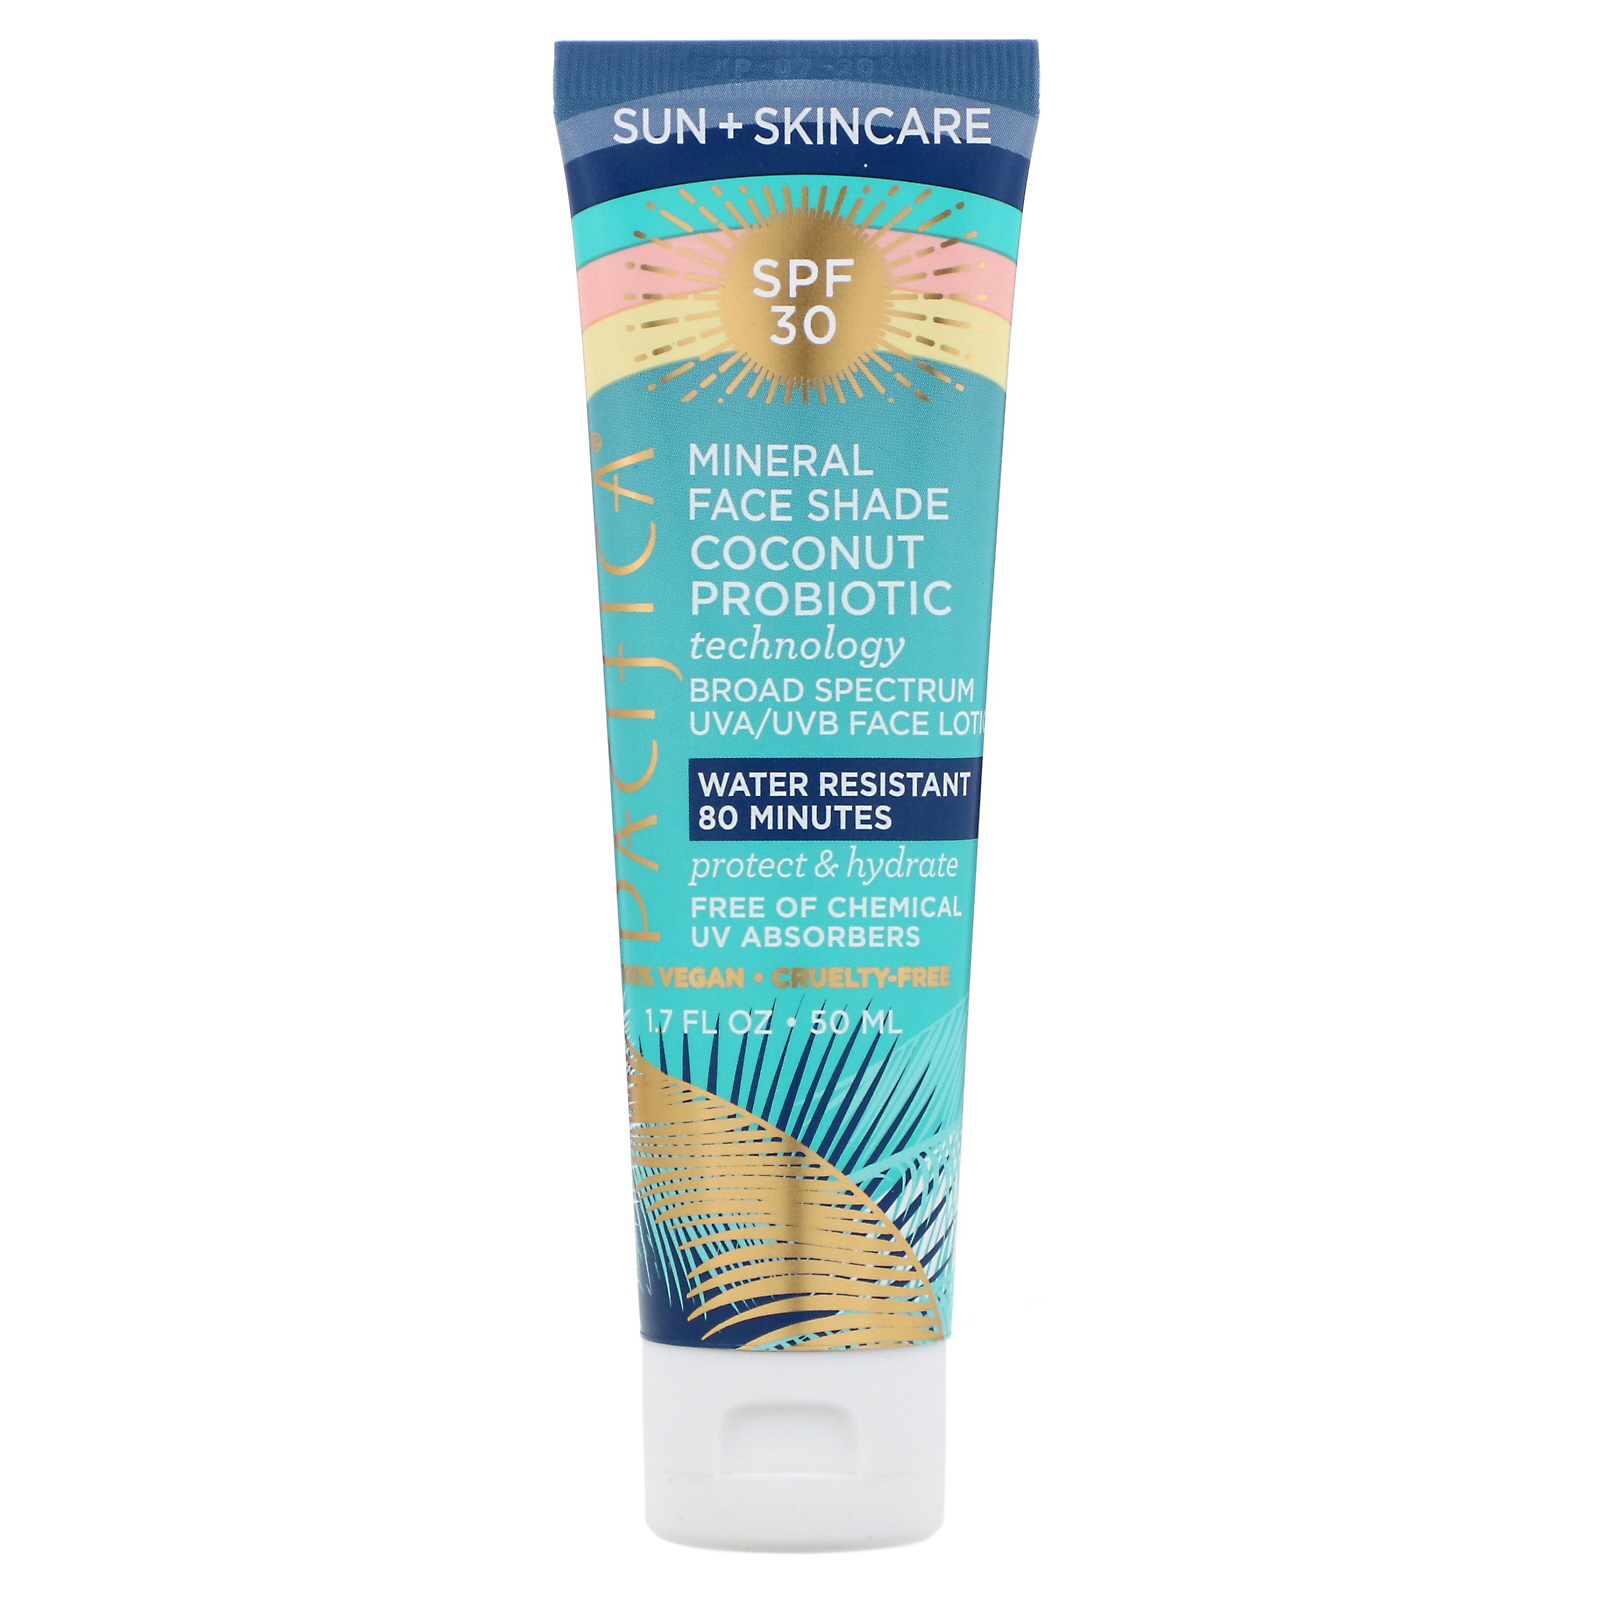 曬太多肌膚提早老化 | 10件 防曬 產品迎炎夏 | Pacifica, Sun + Skincare